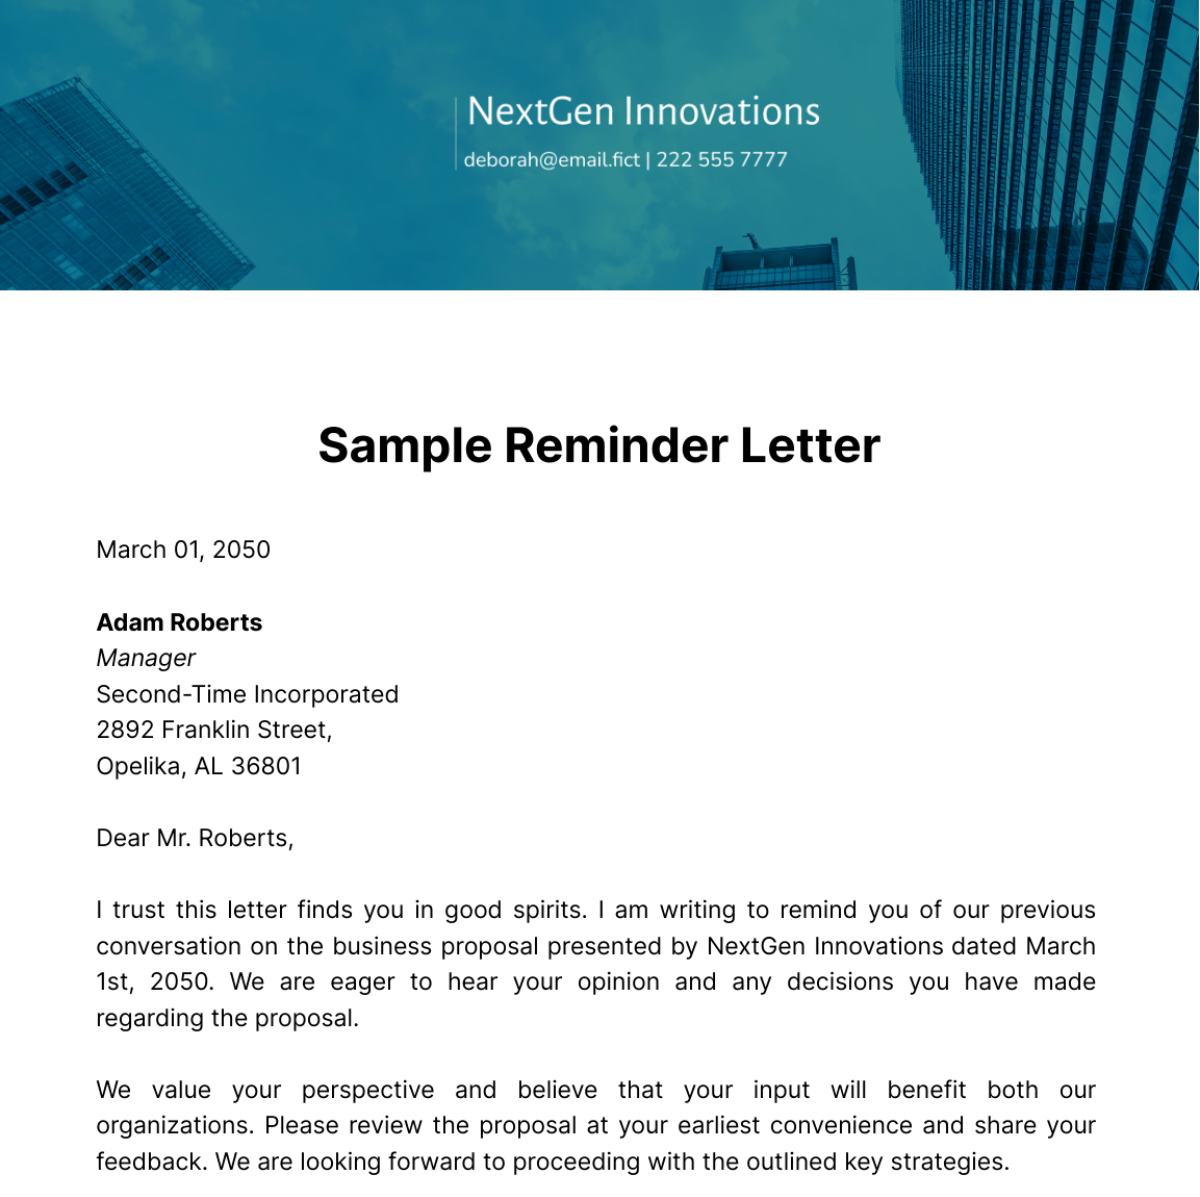 Sample Reminder Letter Template